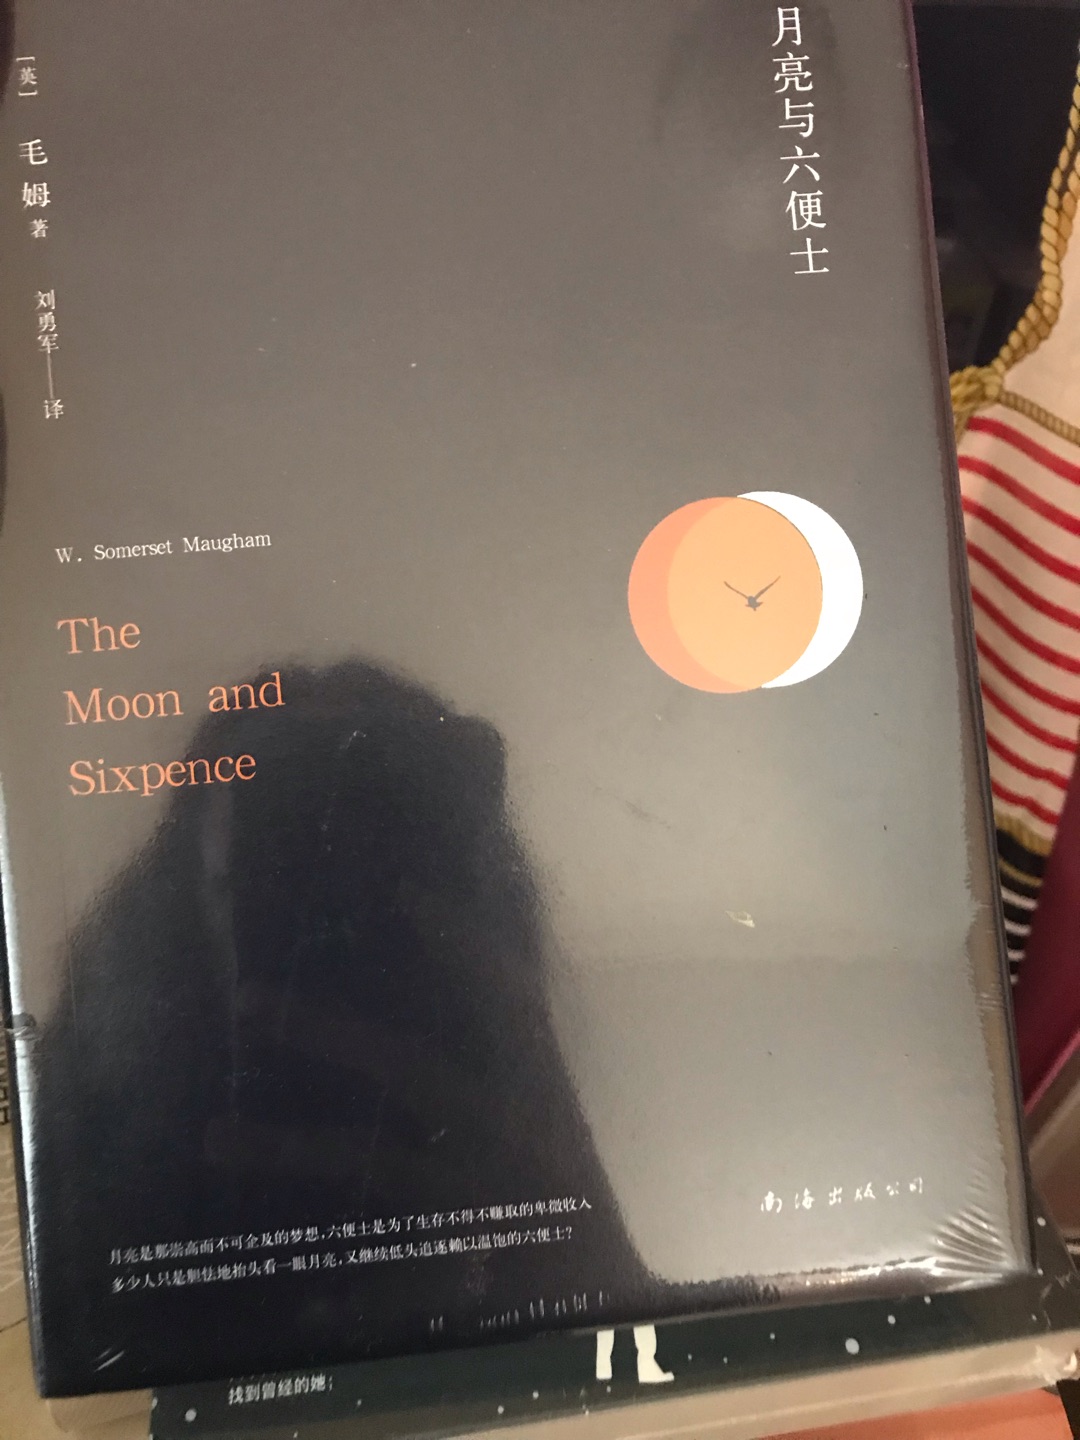 很久之前就看过英文版了，特地买版中文来收藏。月亮与六便士对我影响很大，有时间一定再读一次